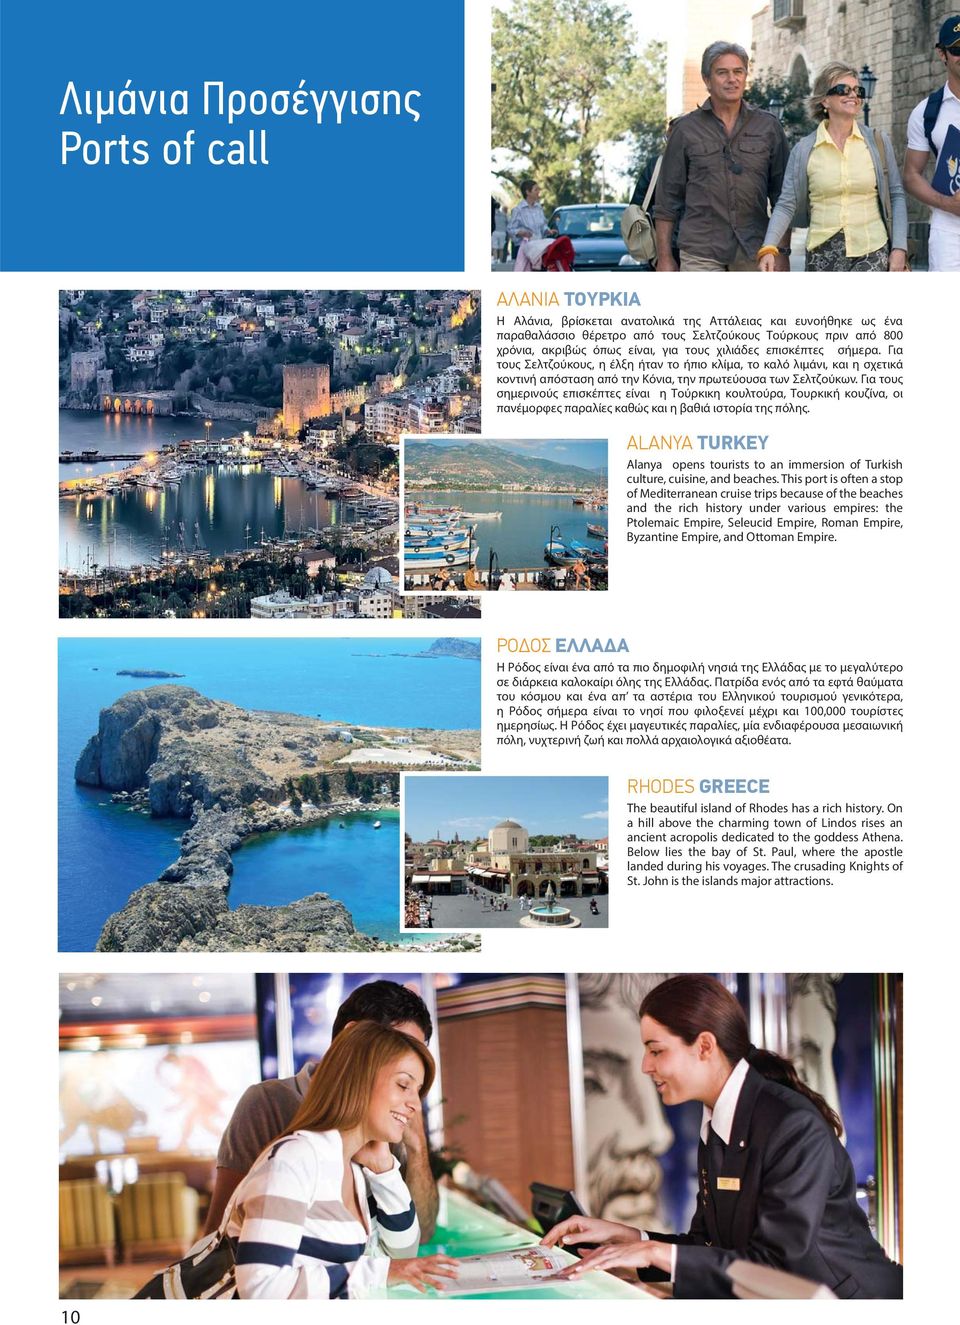 Για τους σημερινούς επισκέπτες είναι η Τούρκικη κουλτούρα, Τουρκική κουζίνα, οι πανέμορφες παραλίες καθώς και η βαθιά ιστορία της πόλης.